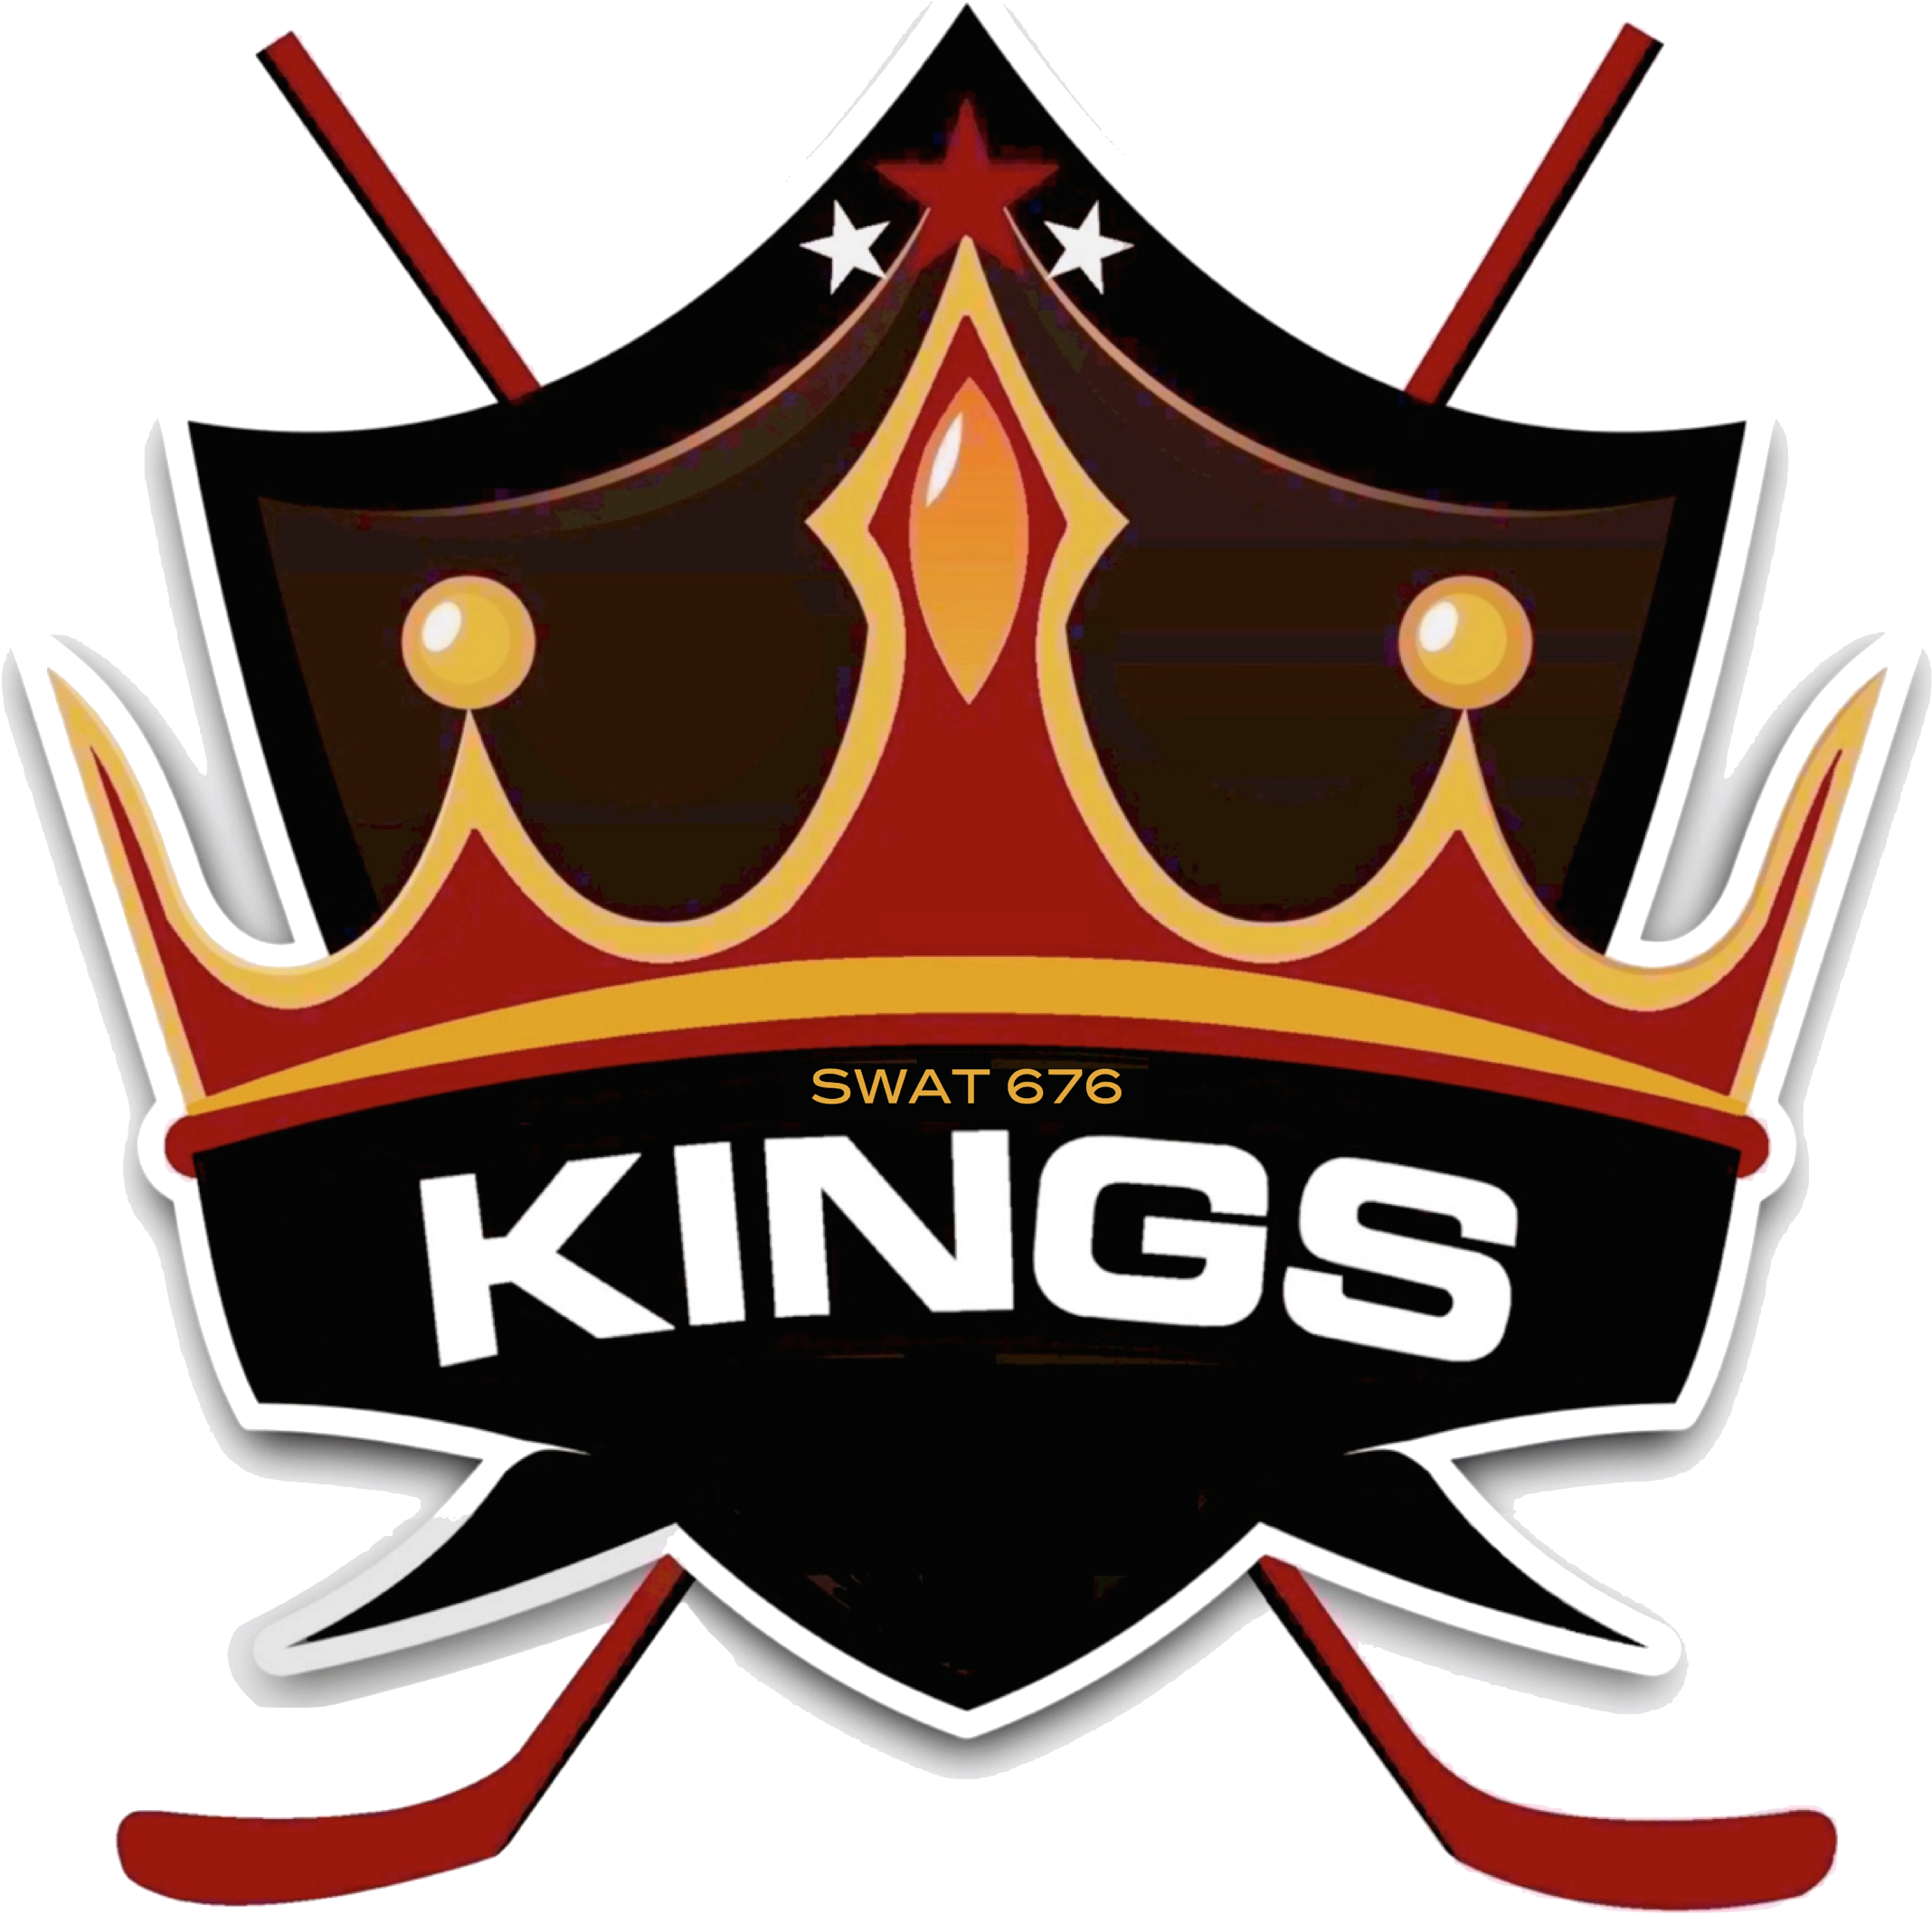 King logo. Кинг лого. Kingz лого. Kral логотип. Логотип King Studios.